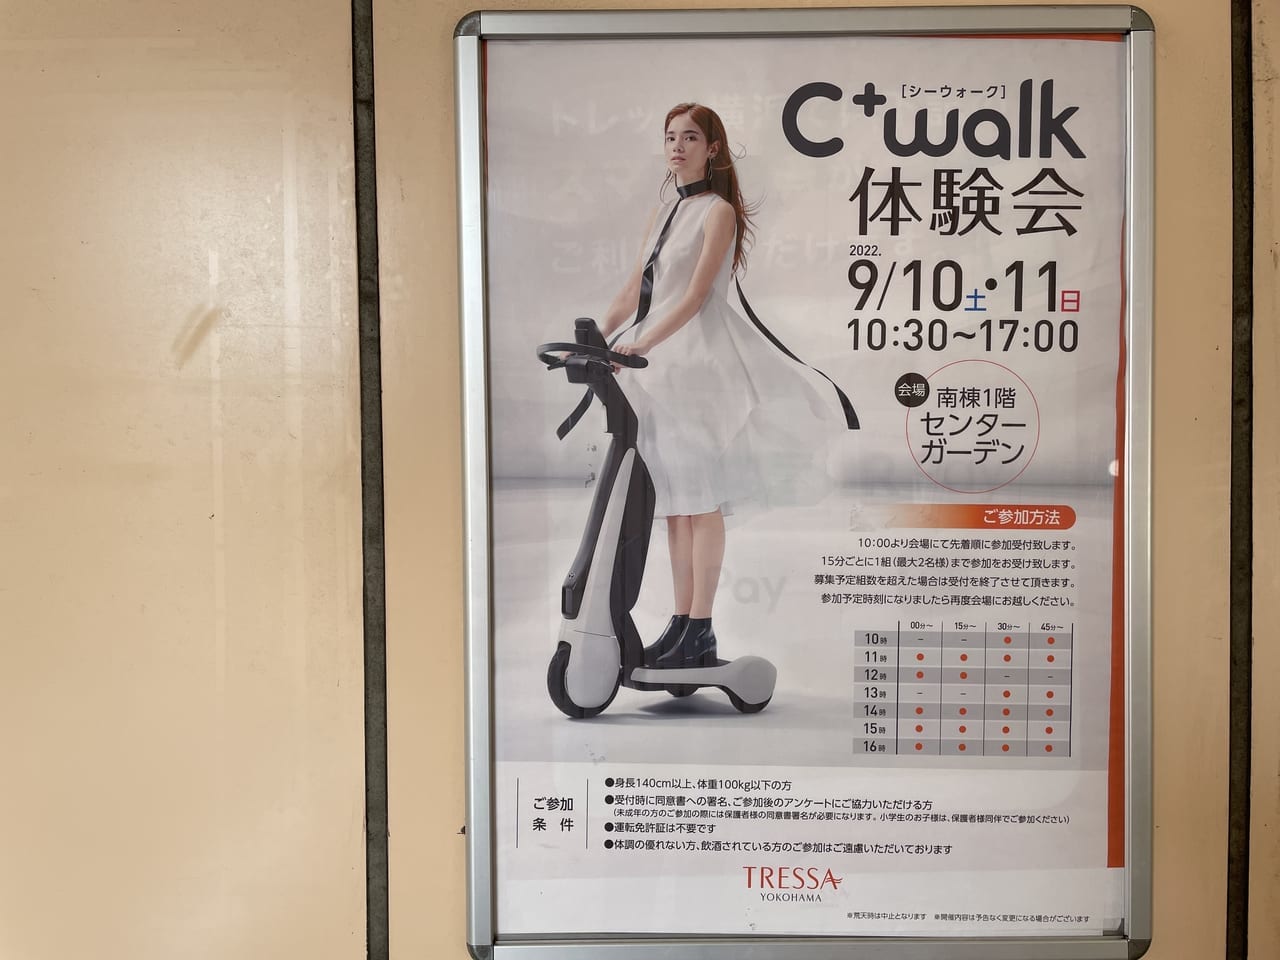 Ｃ＋walk体験会　トレッサ横浜